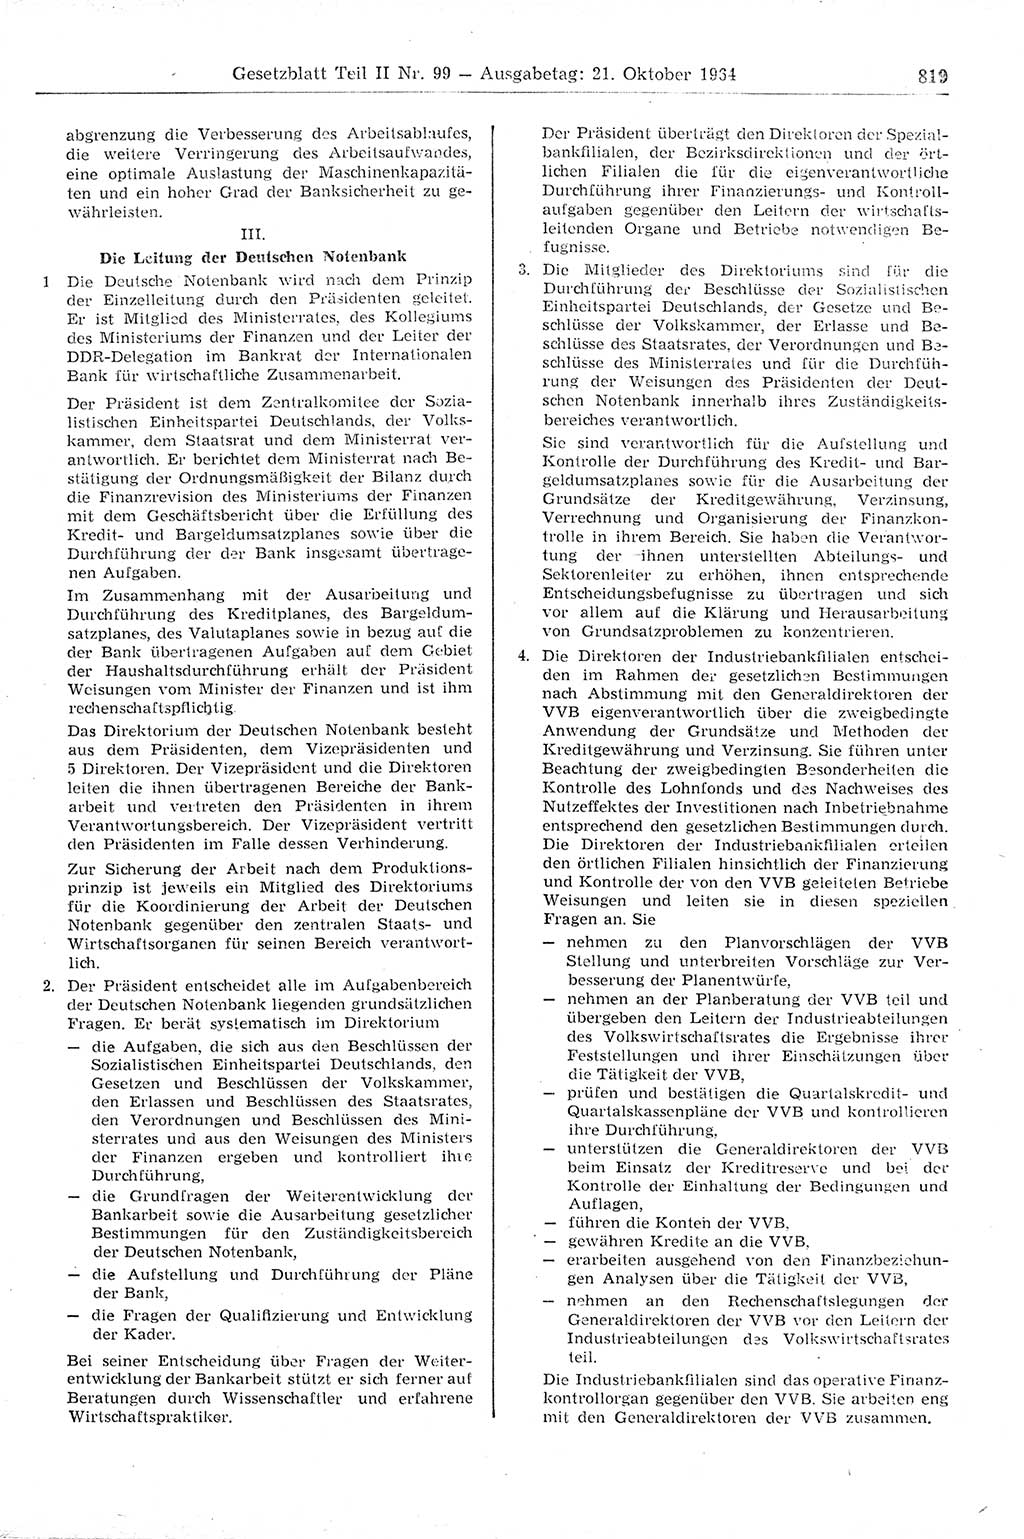 Gesetzblatt (GBl.) der Deutschen Demokratischen Republik (DDR) Teil ⅠⅠ 1964, Seite 819 (GBl. DDR ⅠⅠ 1964, S. 819)